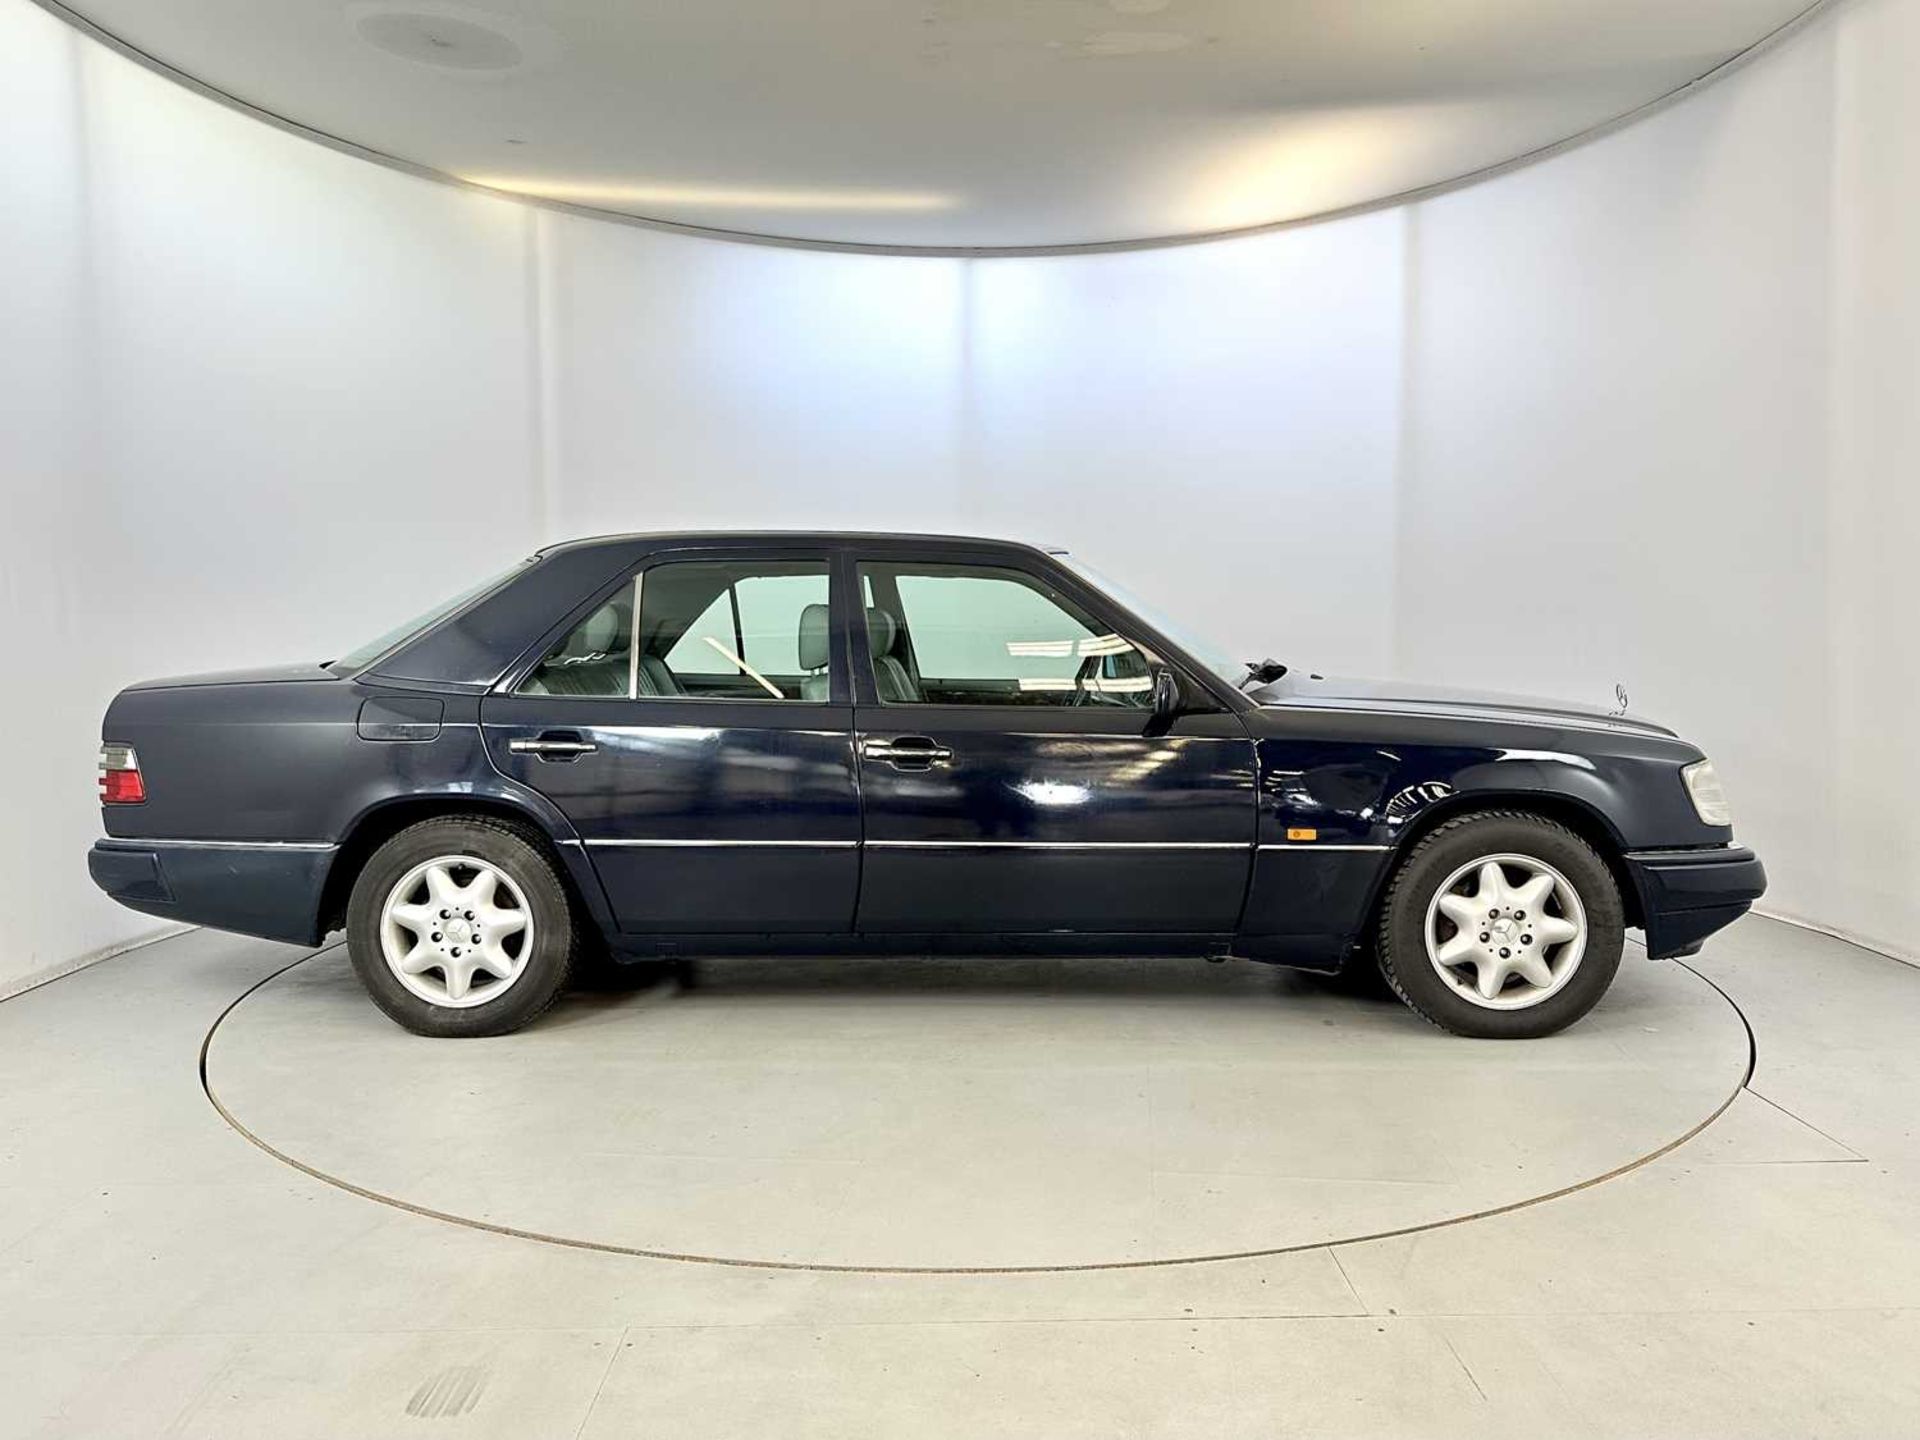 1993 Mercedes-Benz 200E - Image 11 of 32